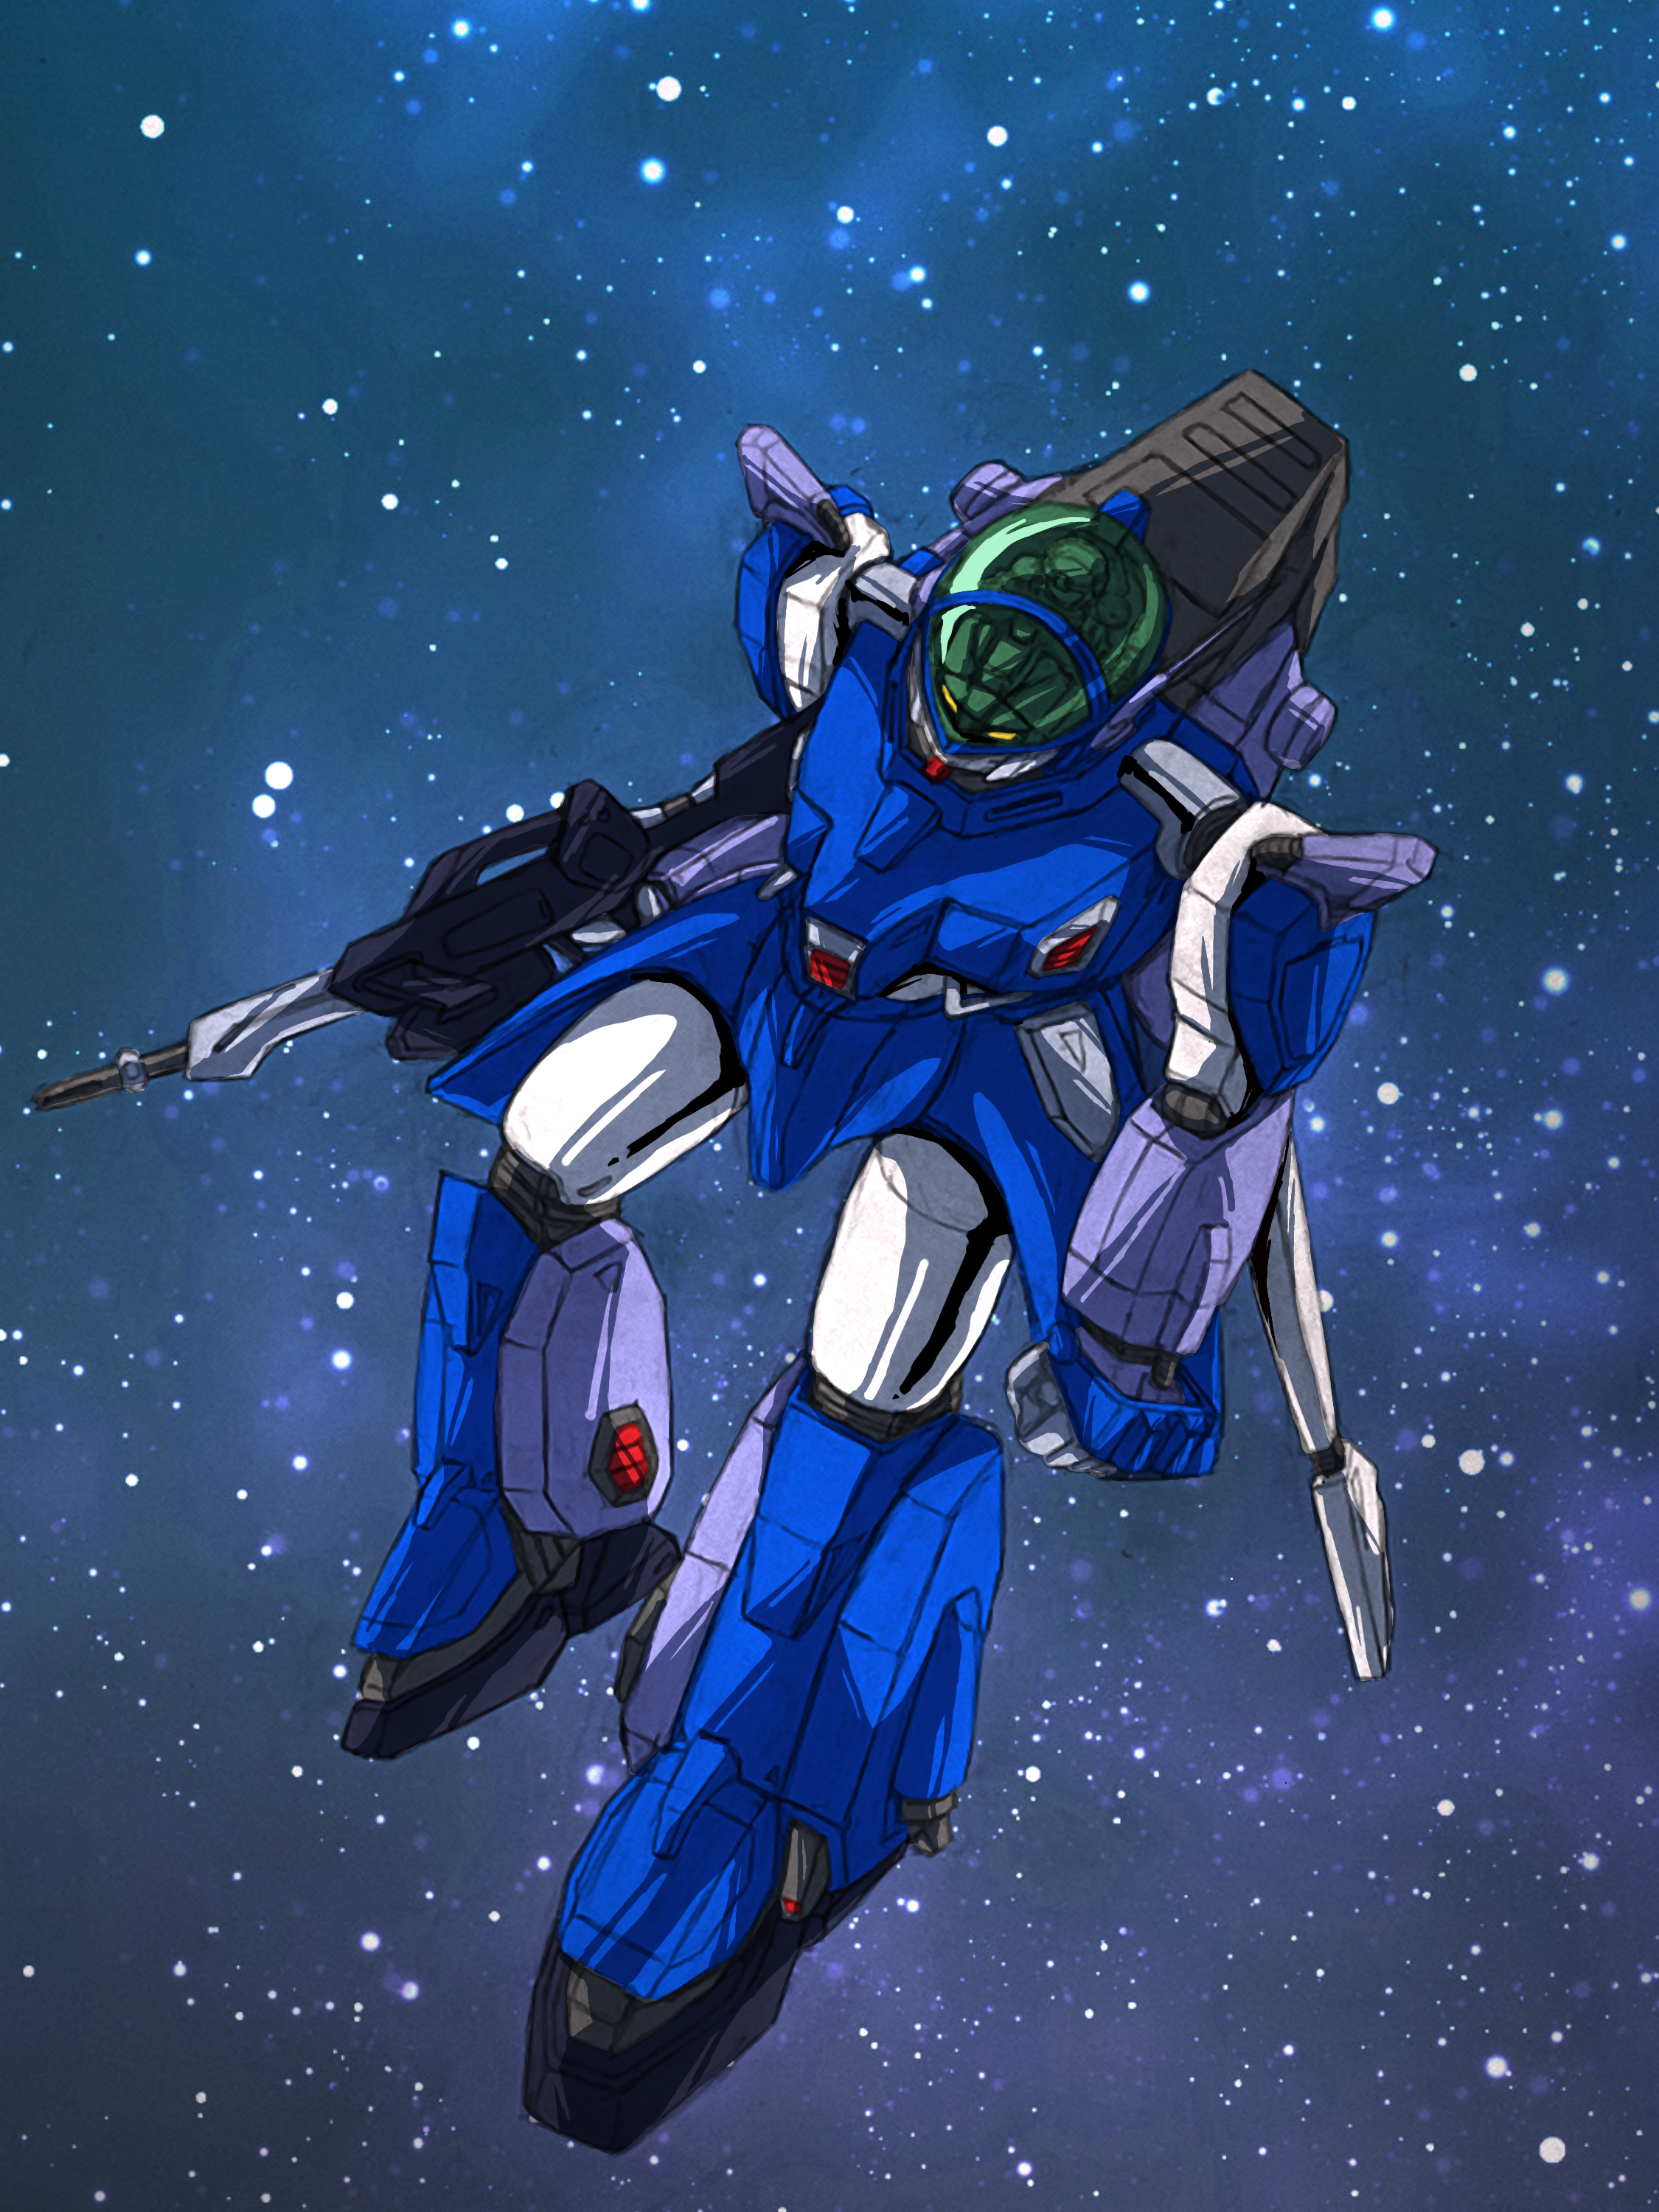 Anime 2250x3000 anime mechs Layzner Blue Meteor SPT Layzner Super Robot Taisen artwork digital art fan art